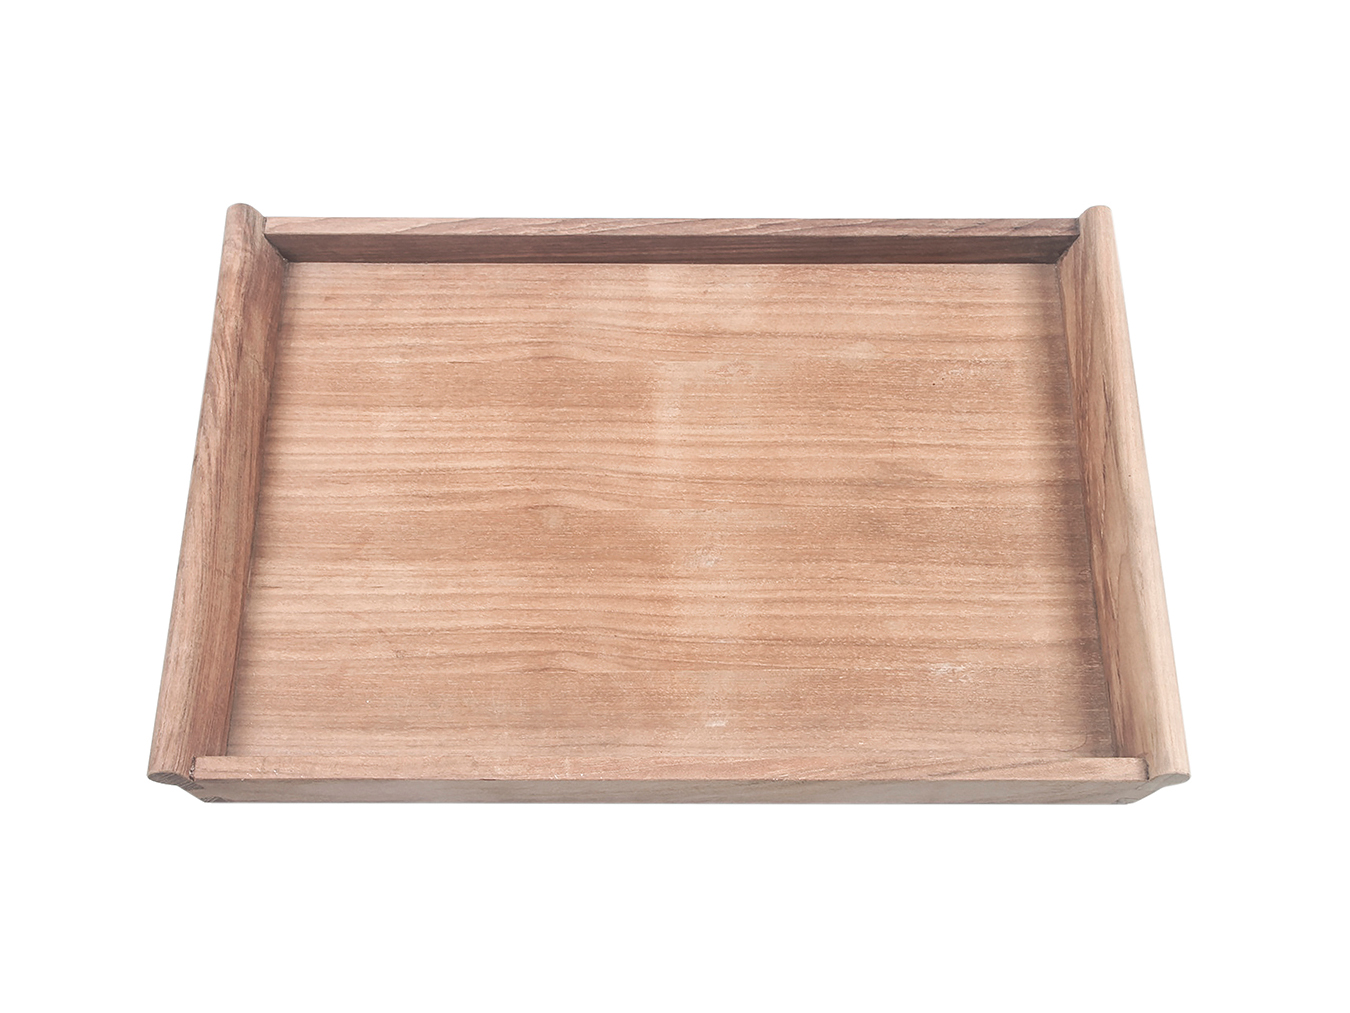 Tabletttisch klappbar SERVING TRAY | WITH STAND TRAY Teak Traditional von HolzDesignPur